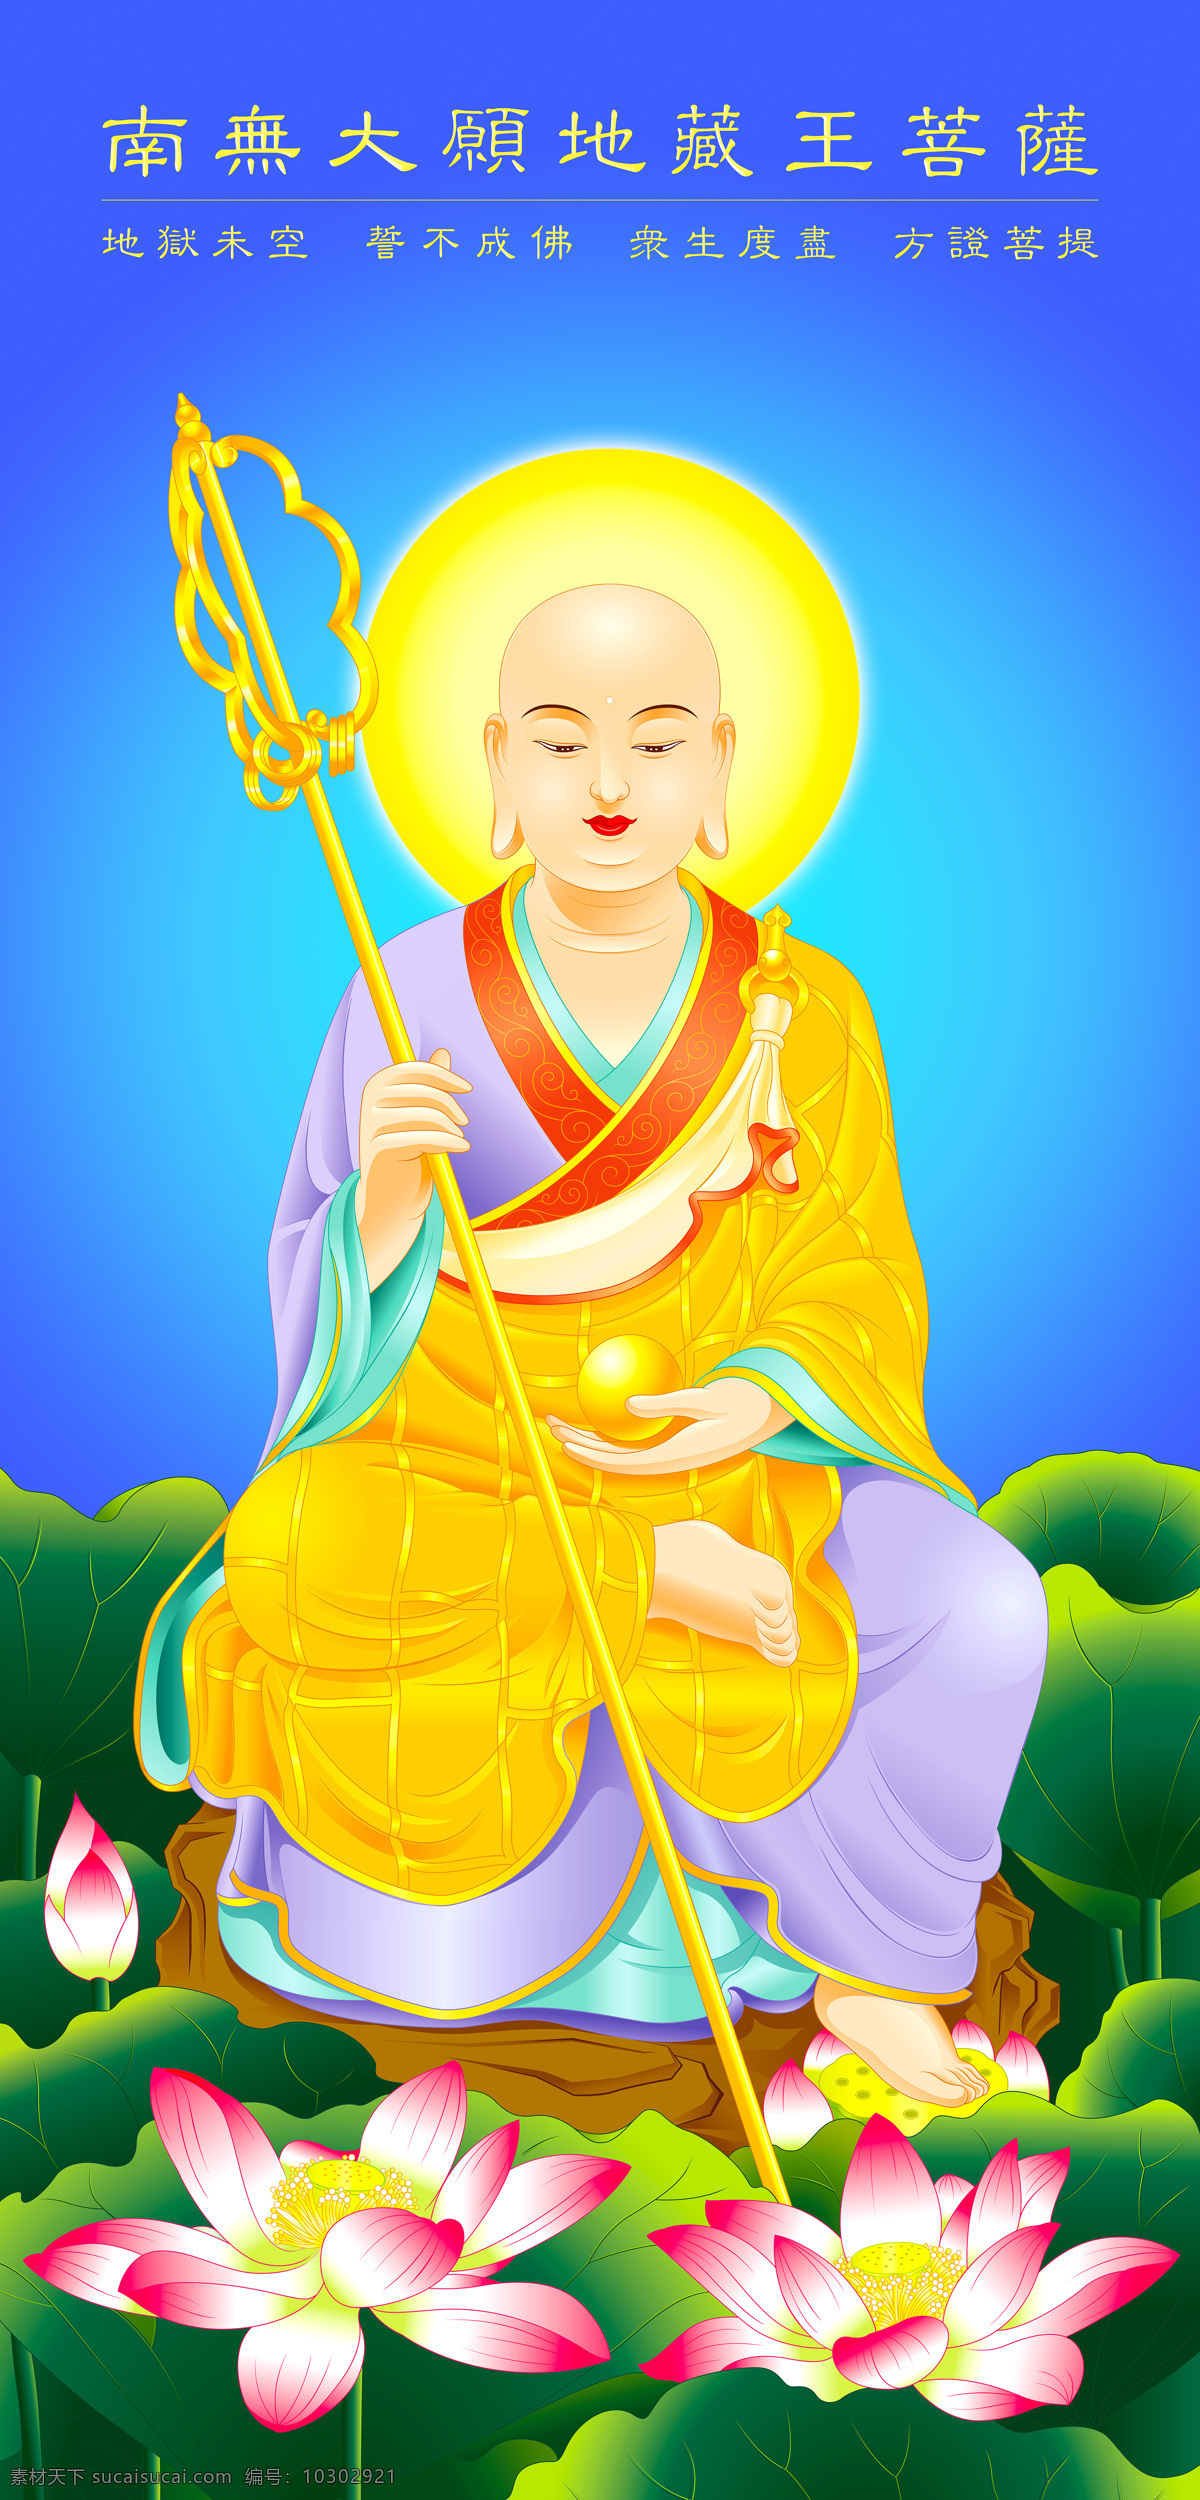 地藏王 菩萨 地藏王菩萨 佛教 佛像 佛法 佛 文化艺术 宗教信仰